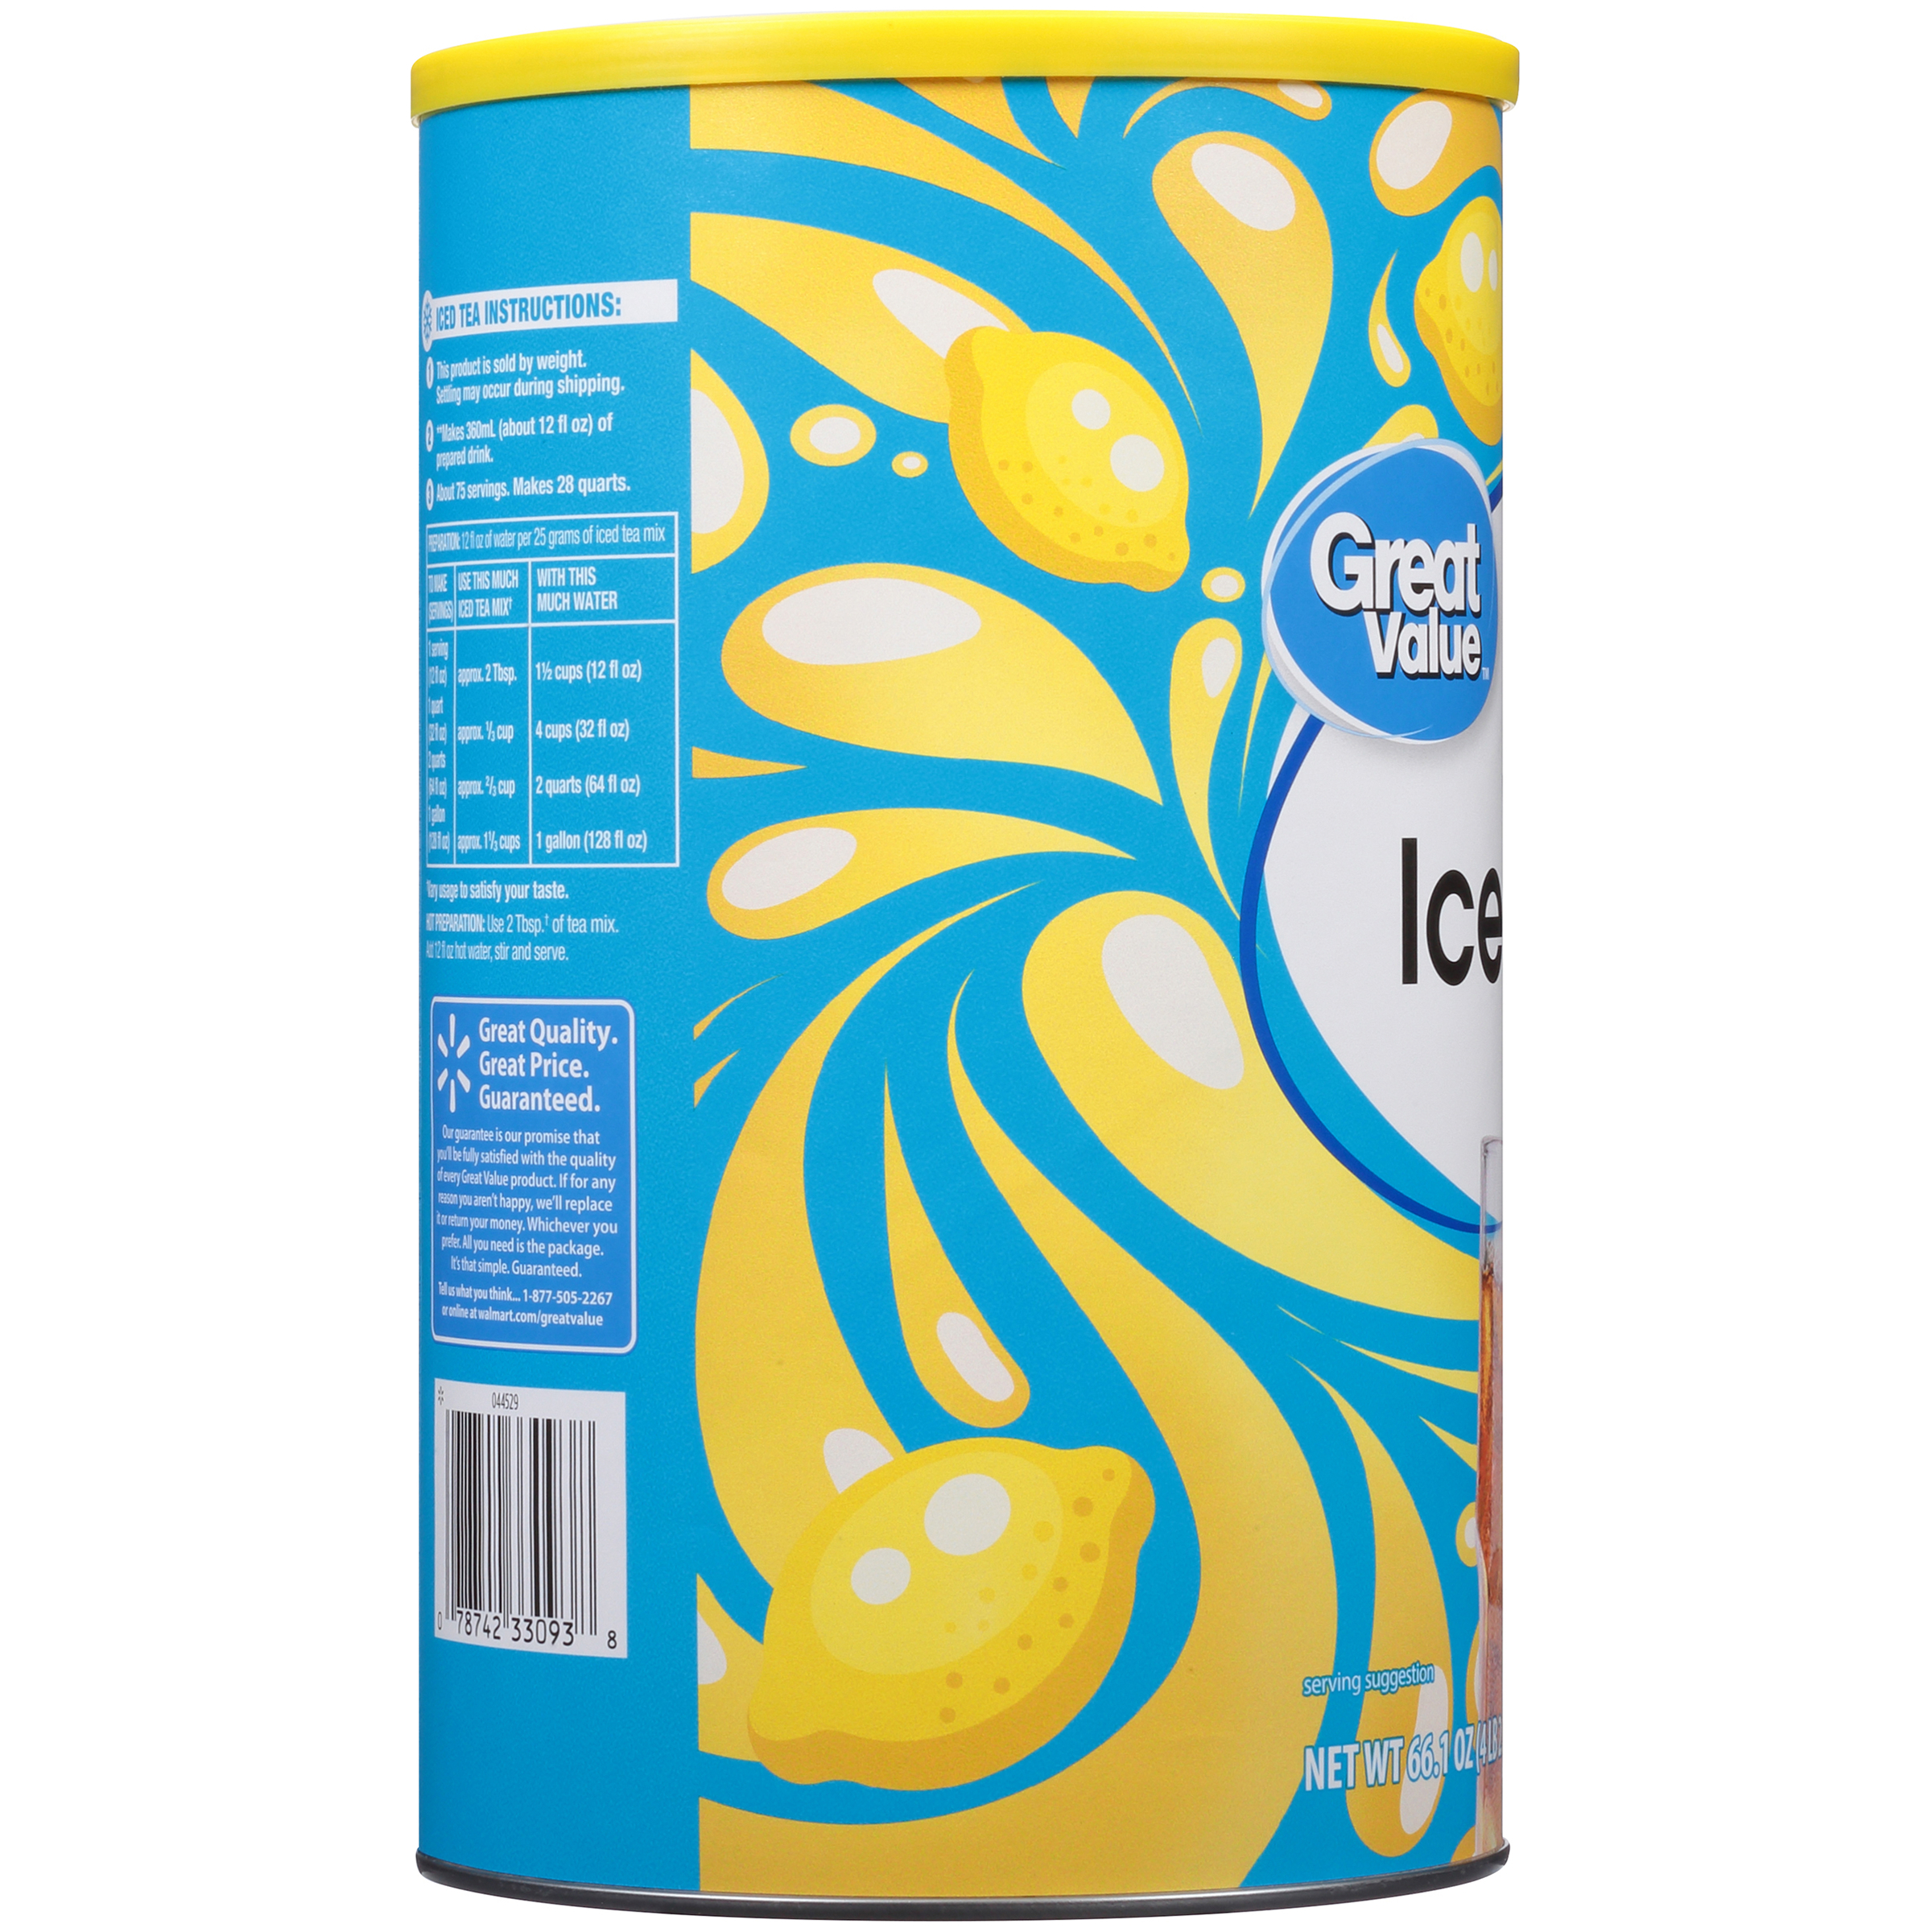 Great Value Natural Lemon Flavor Iced Tea Drink Mix, 66.1 oz - image 5 of 12